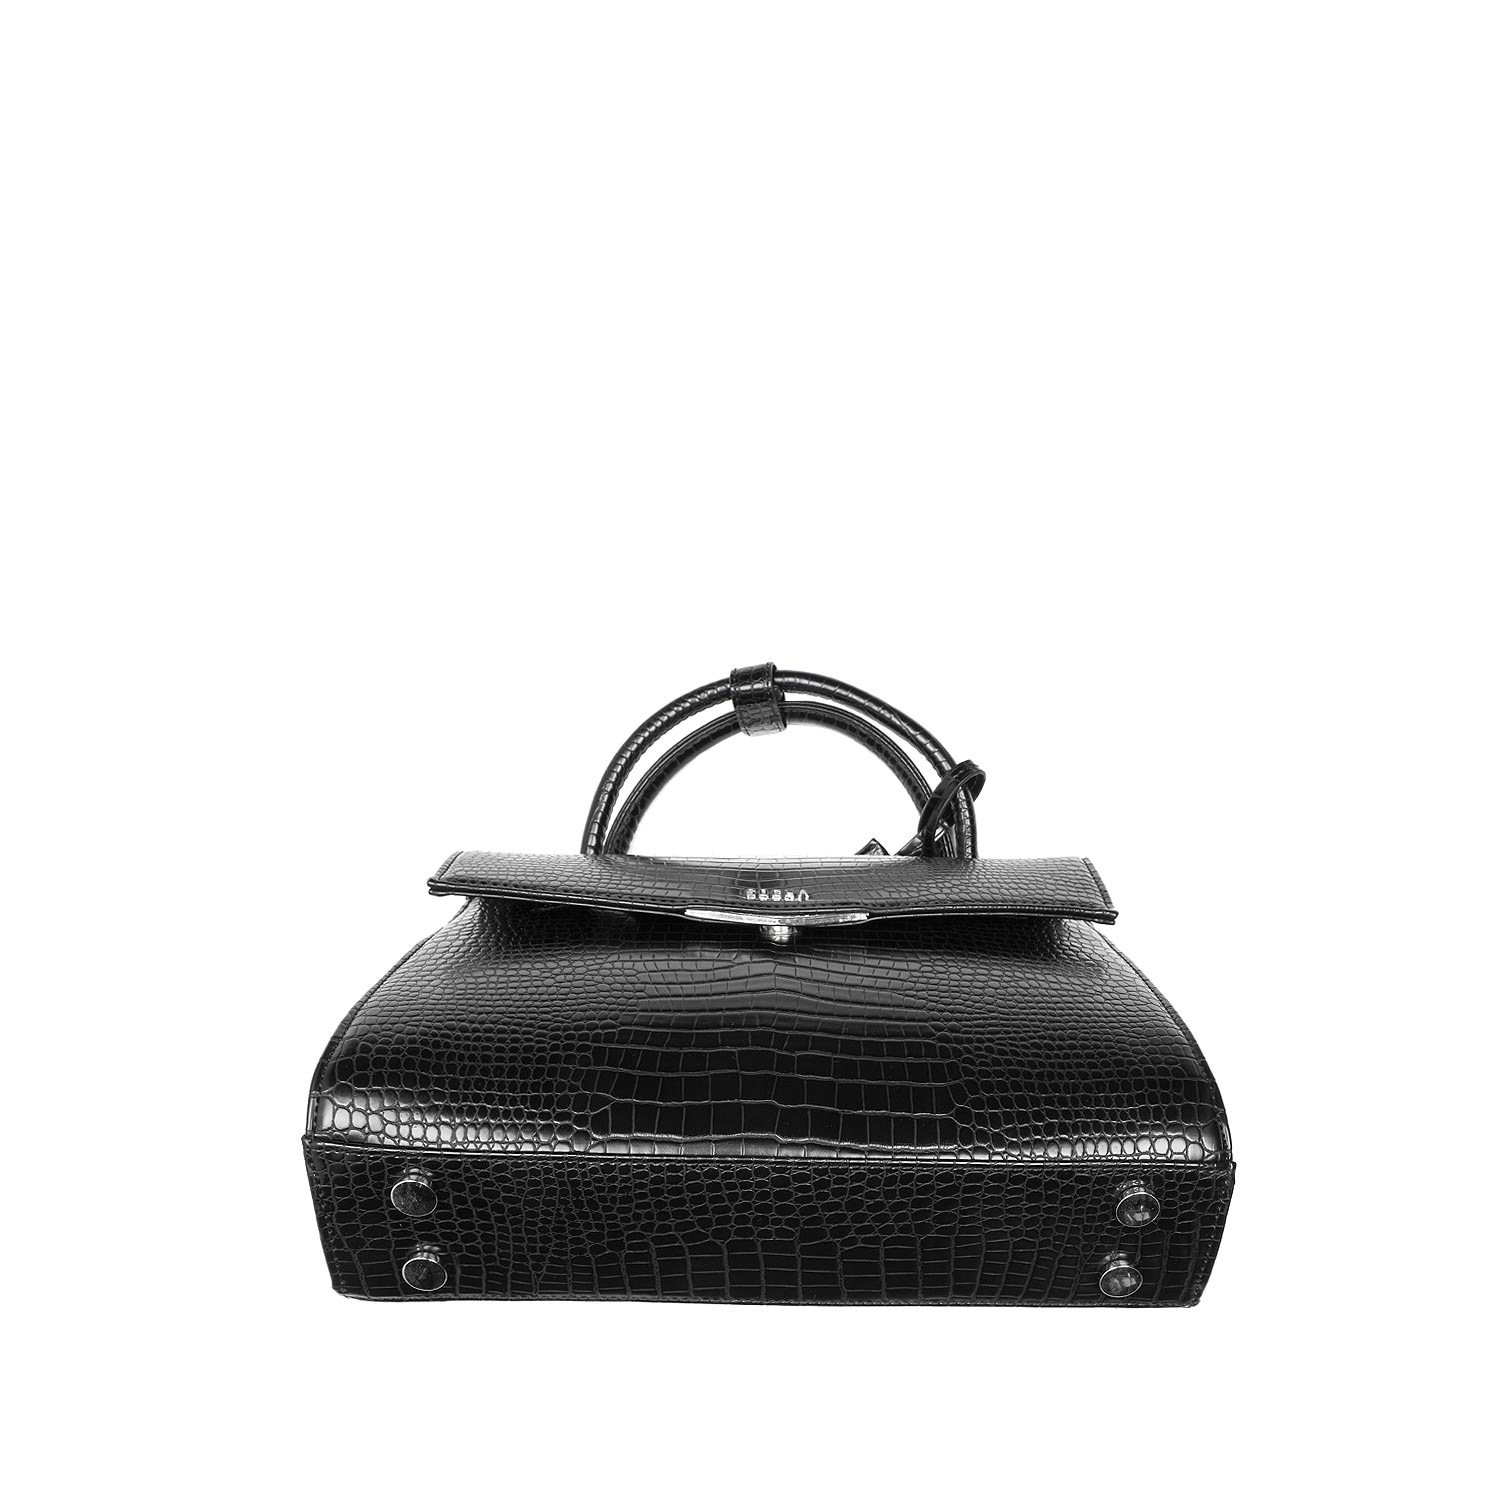 Handbag Croco Black 10"